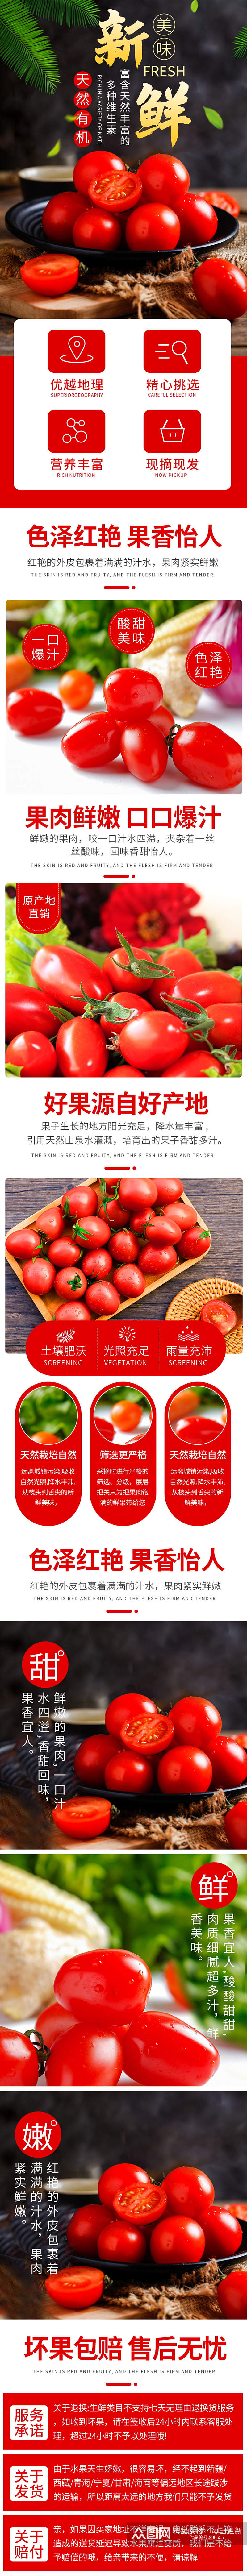 淘宝简约小清新助农蔬菜圣女果番茄详情页素材